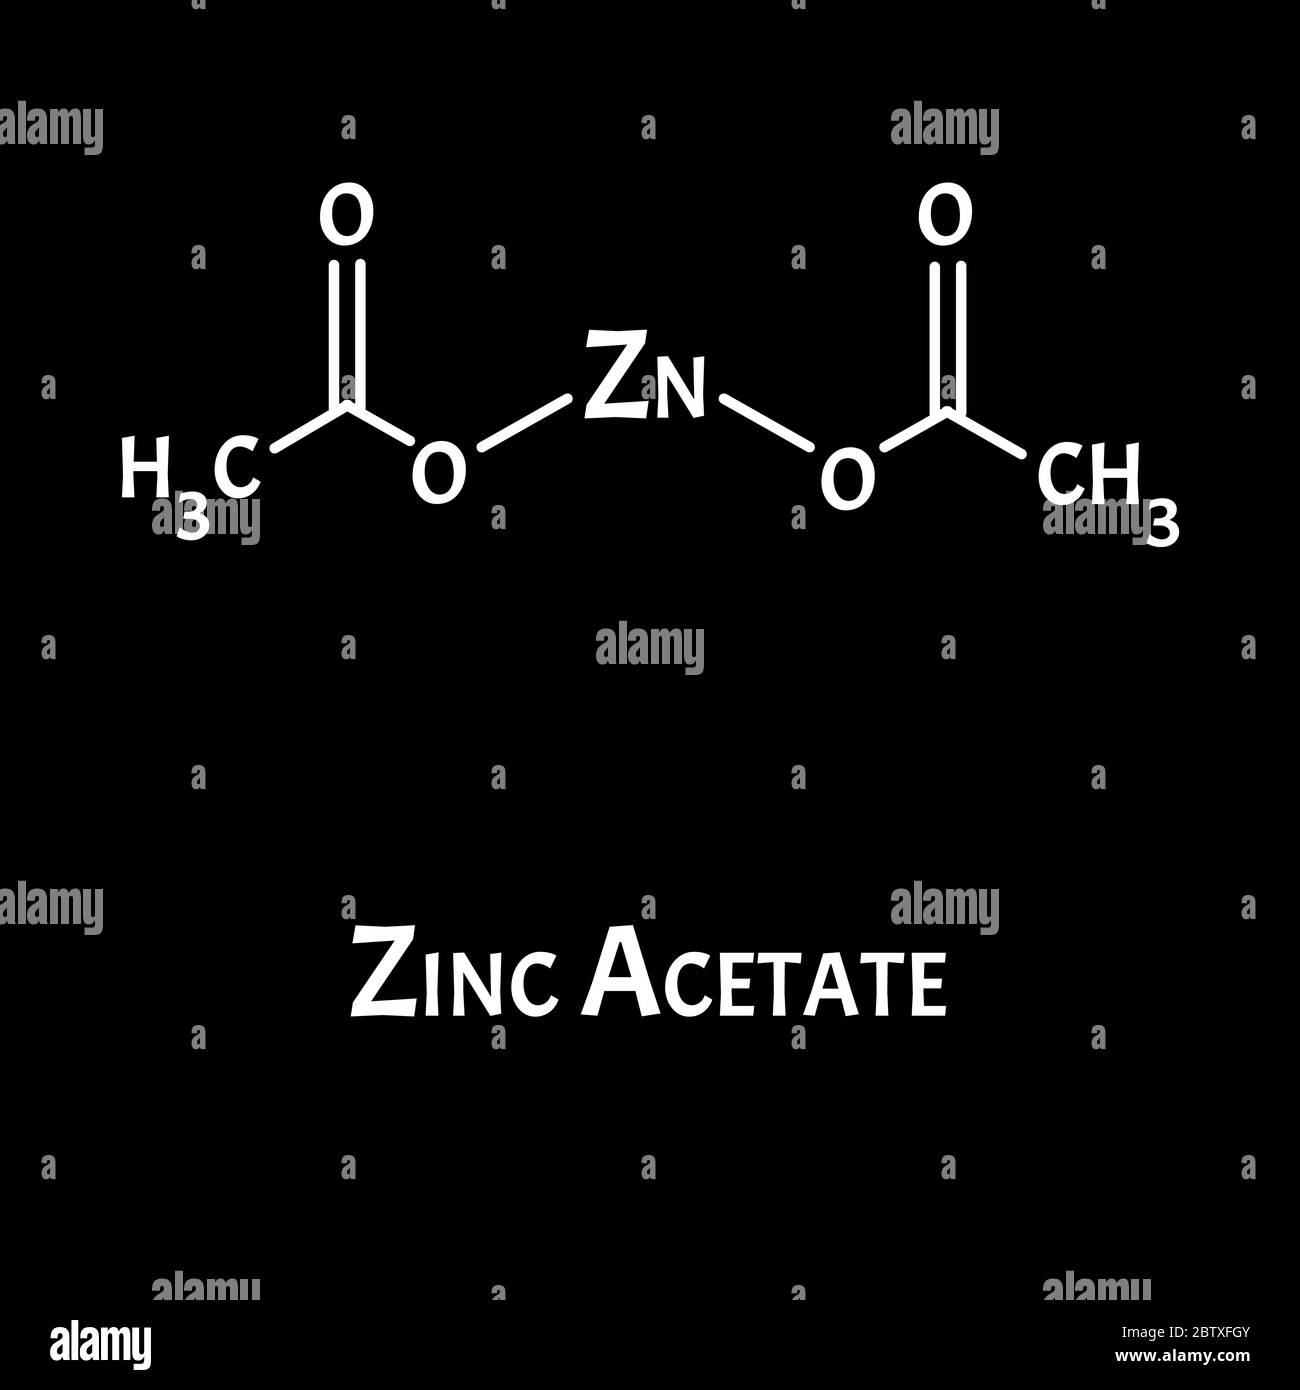 Zinc acetate